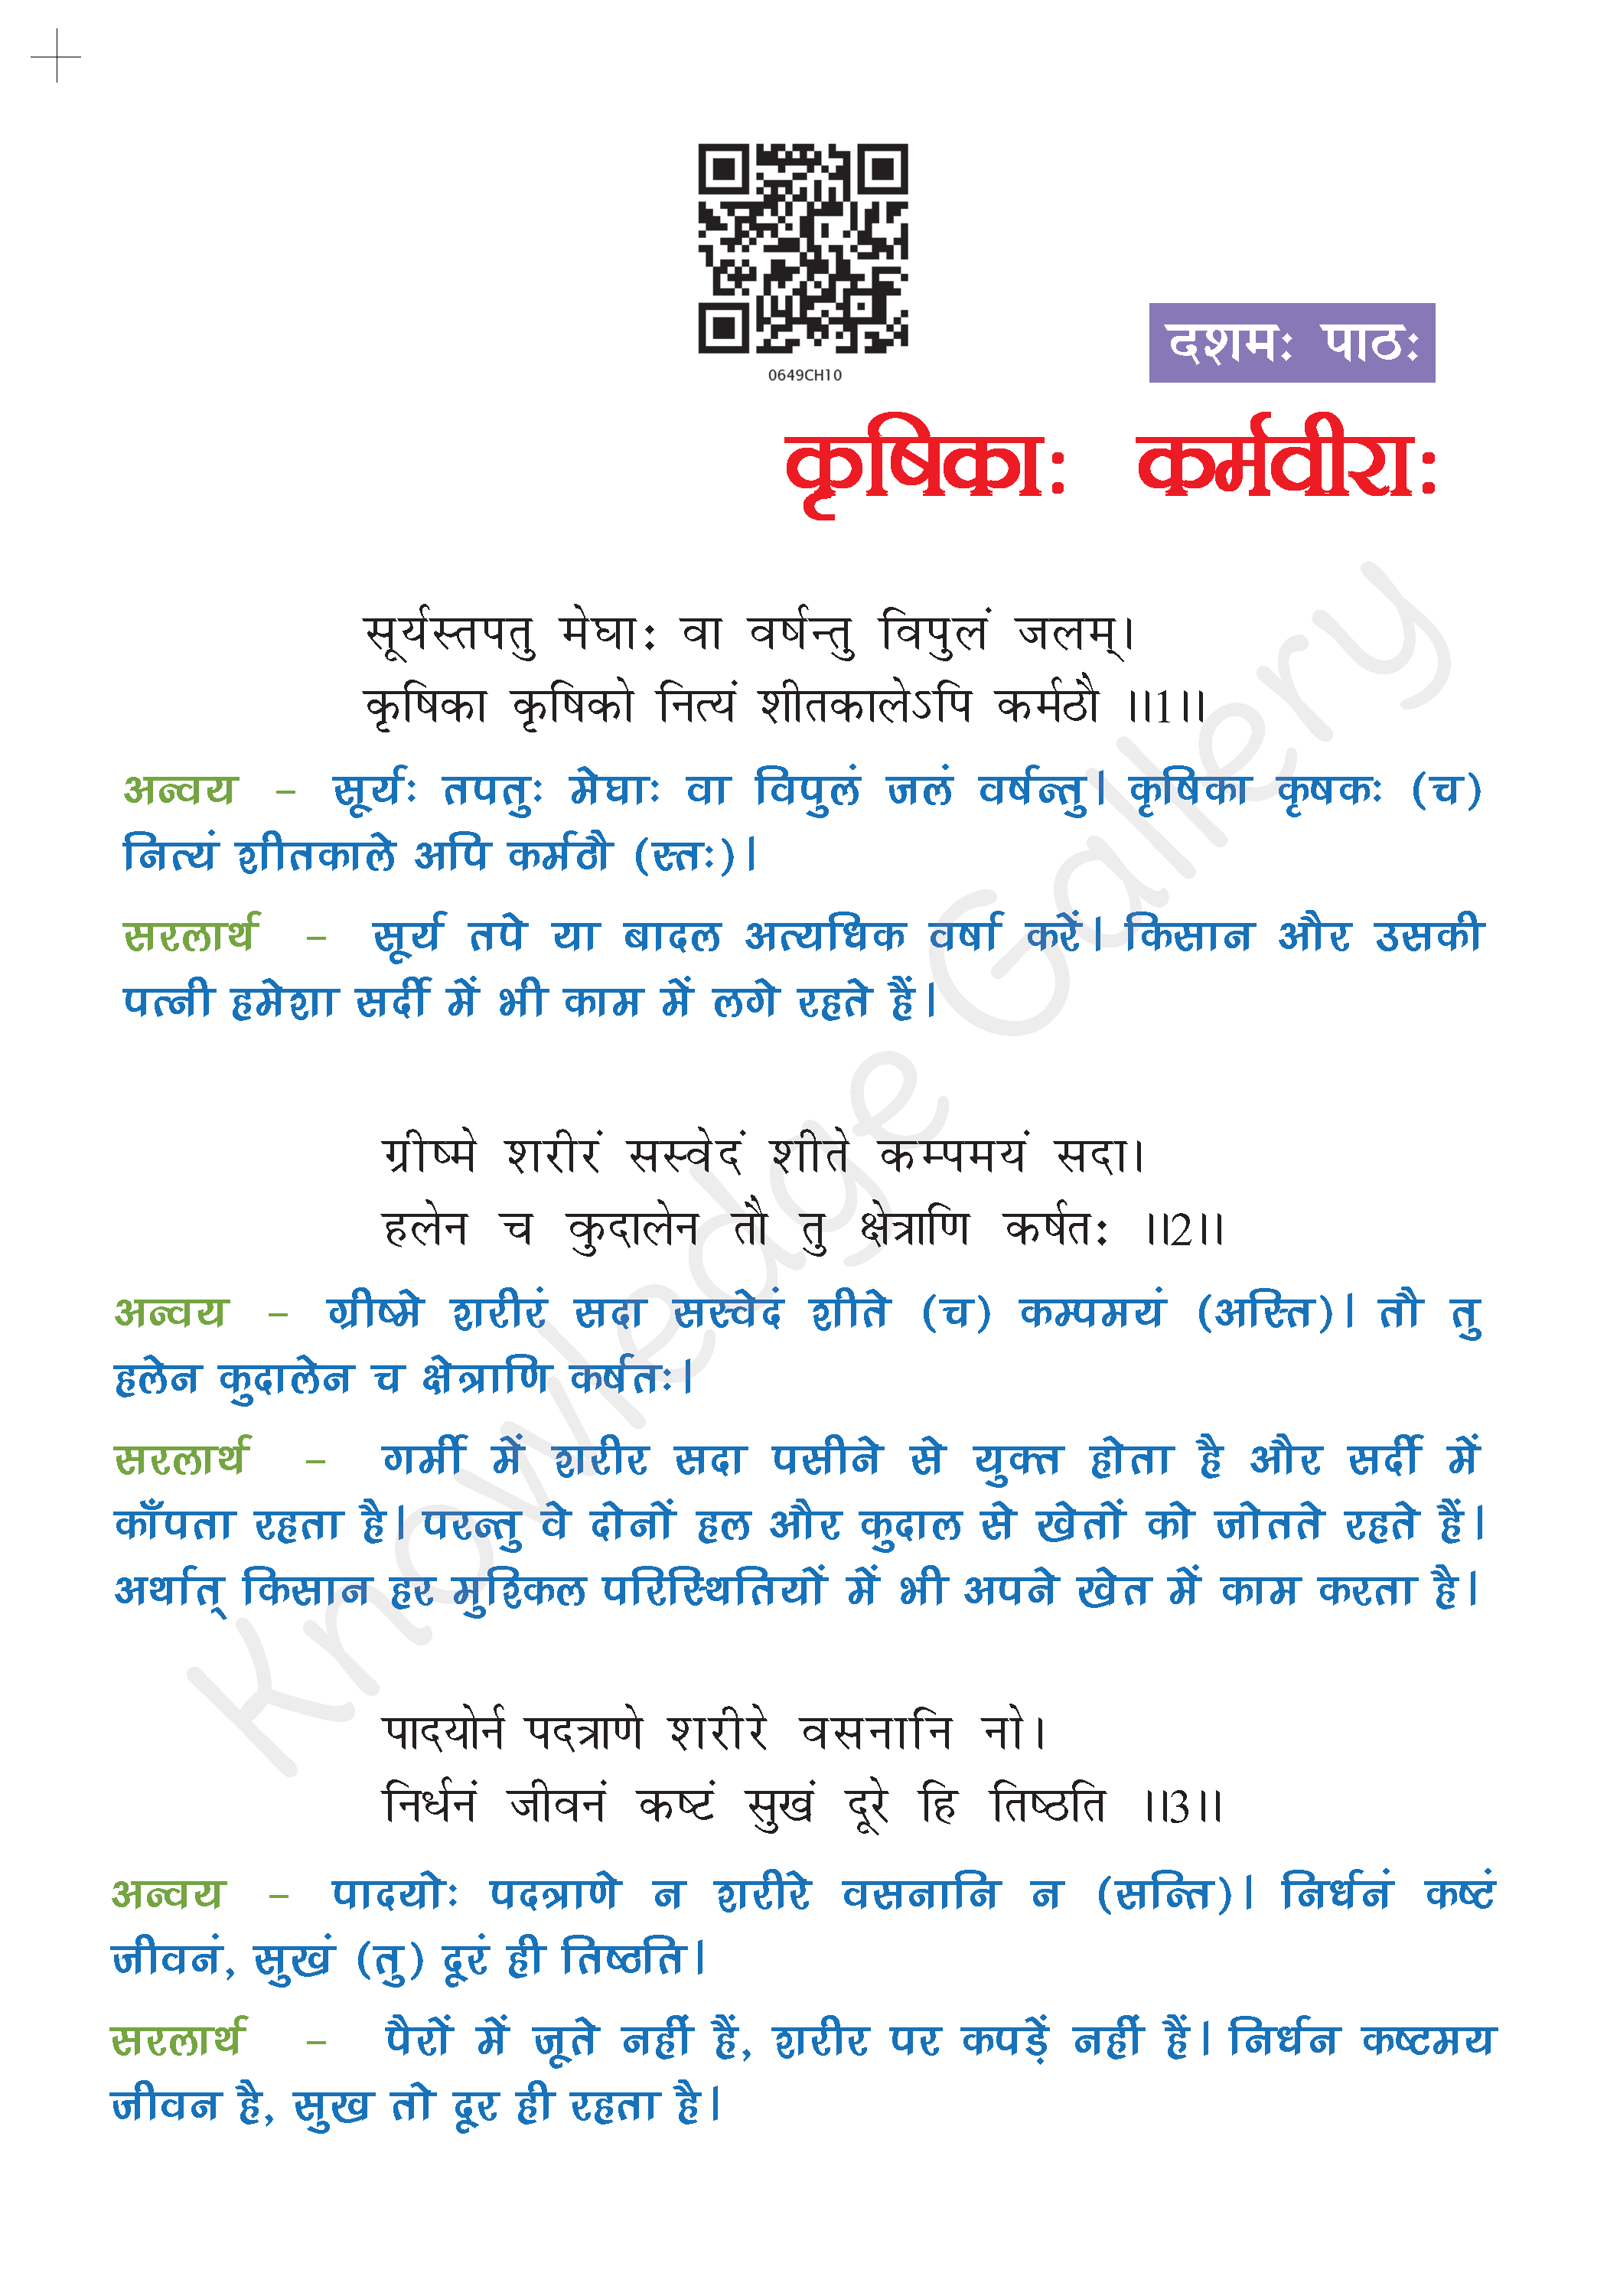 NCERT Solution For Class 6 Sanskrit Chapter 10 part 1